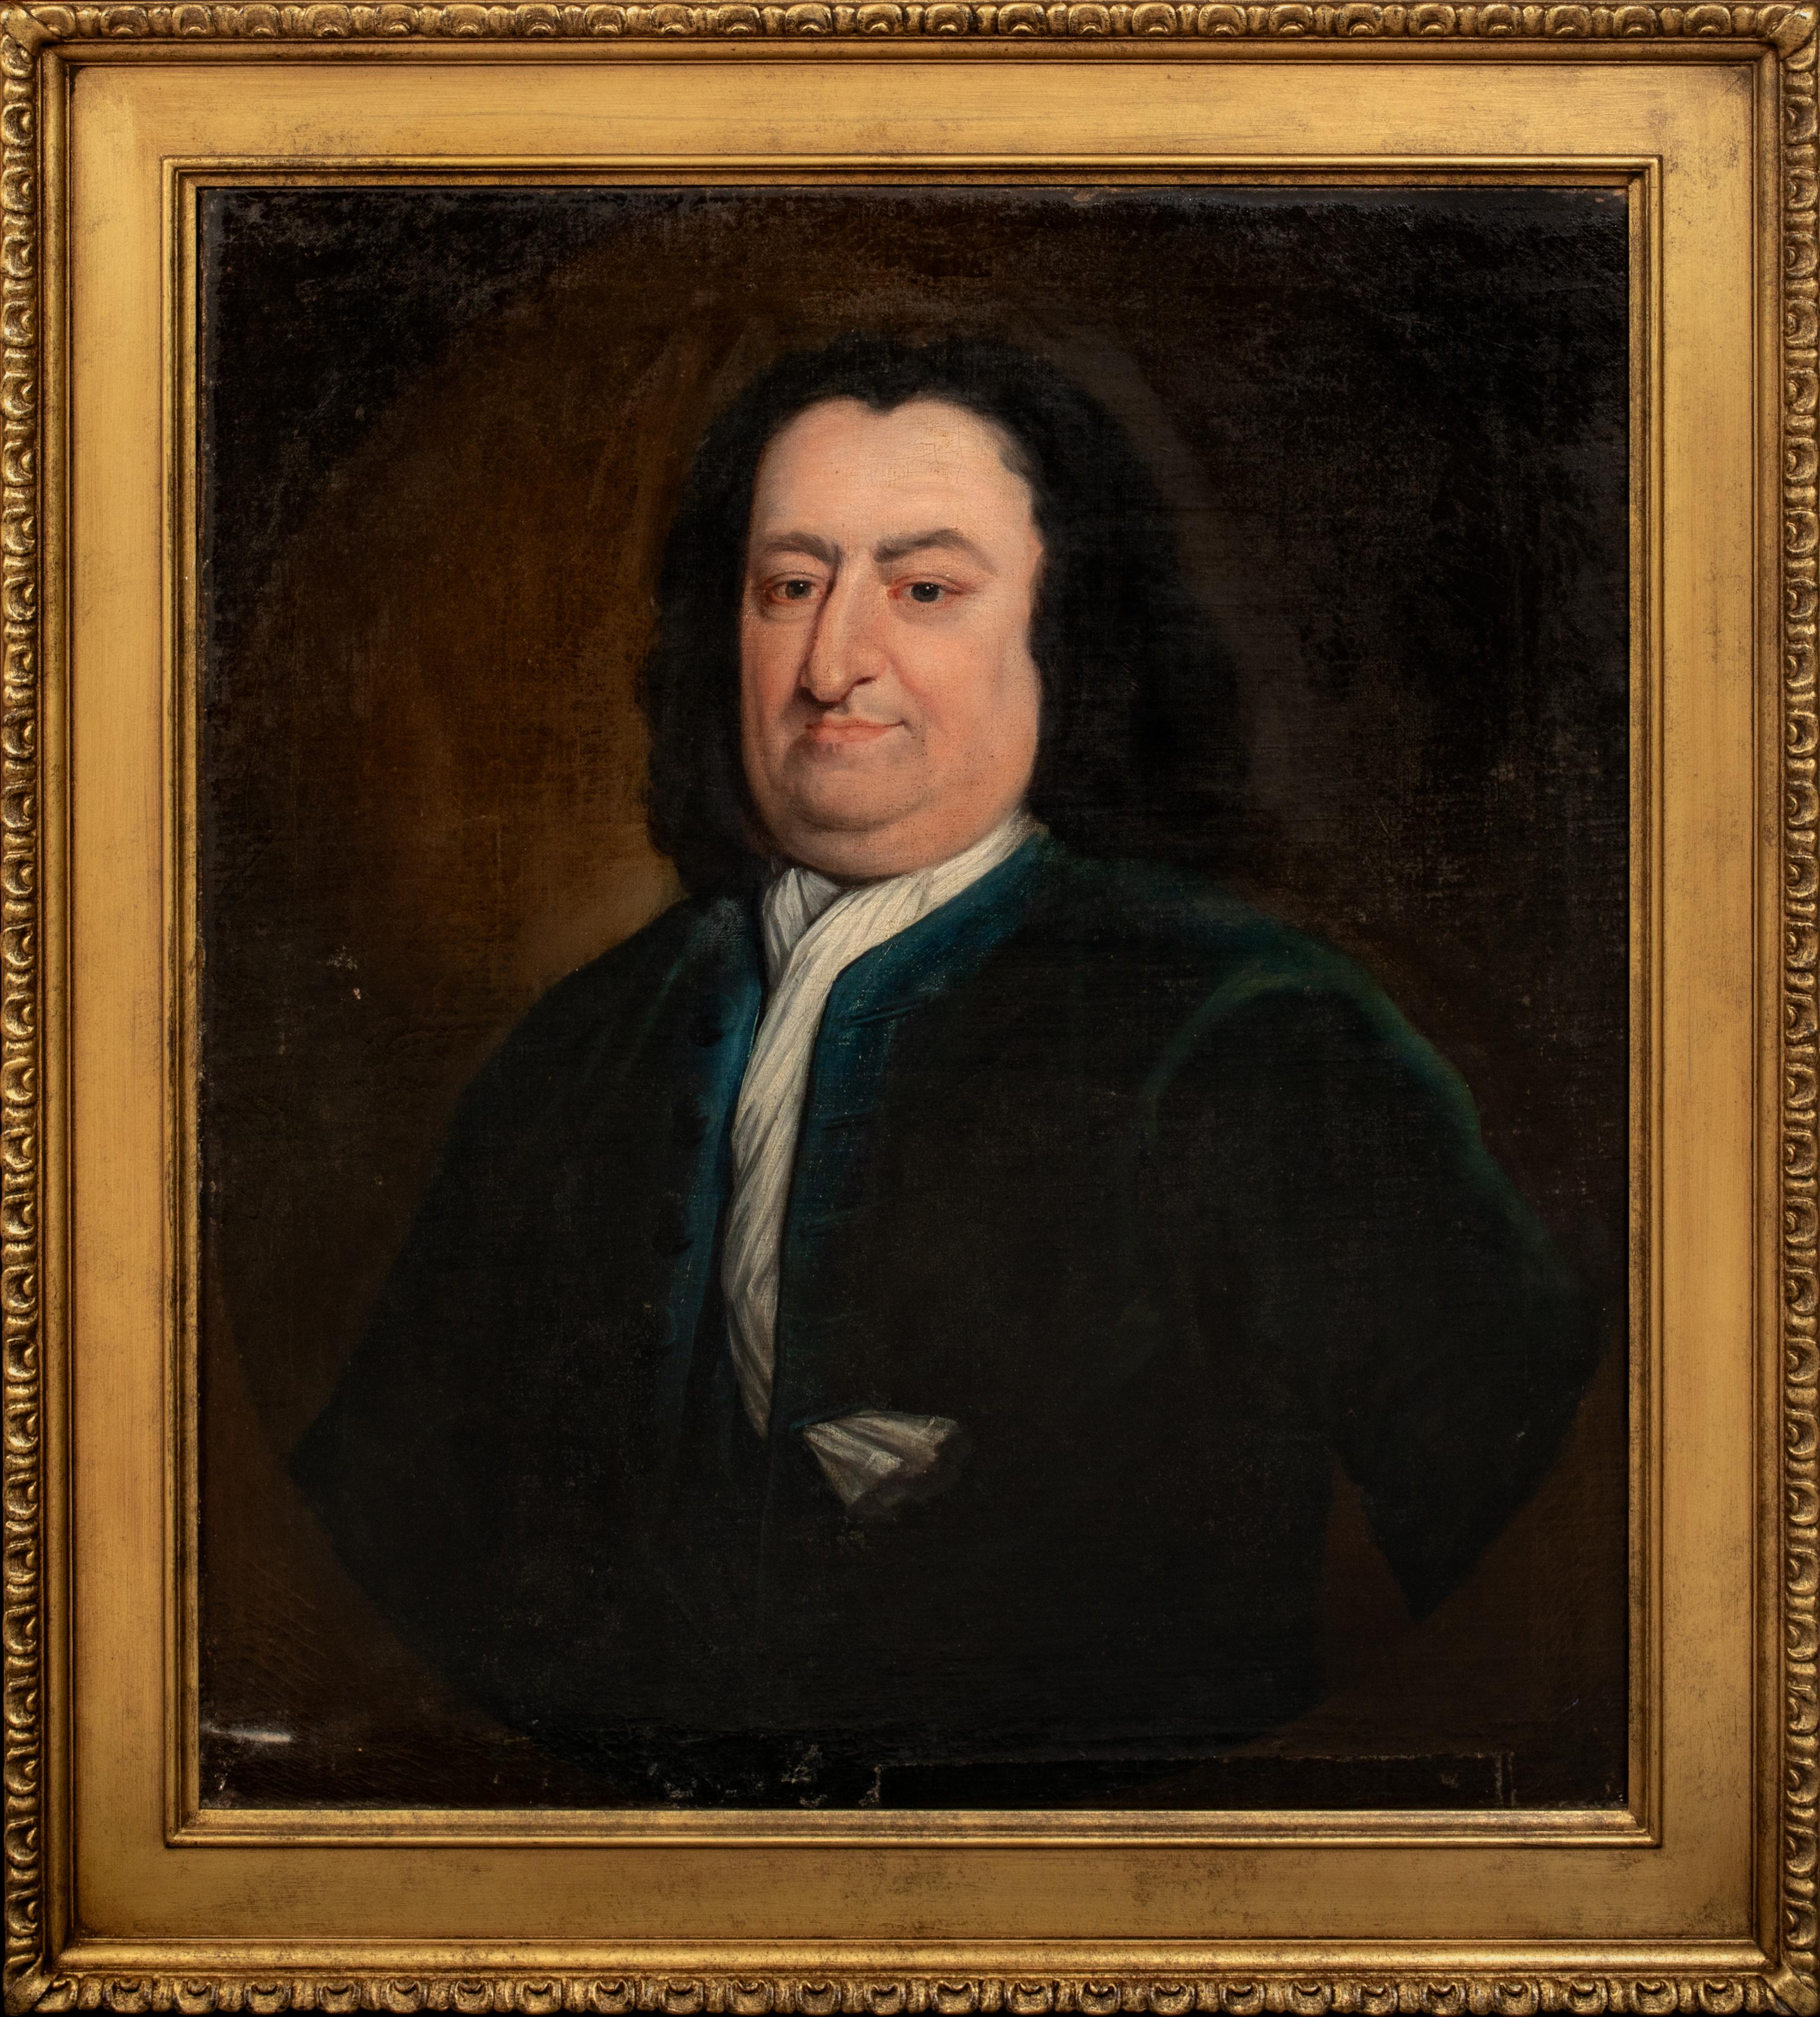 Unknown Portrait Painting – Porträt von William Beekman aus New York, 18. Jahrhundert   Amerikanische Schule